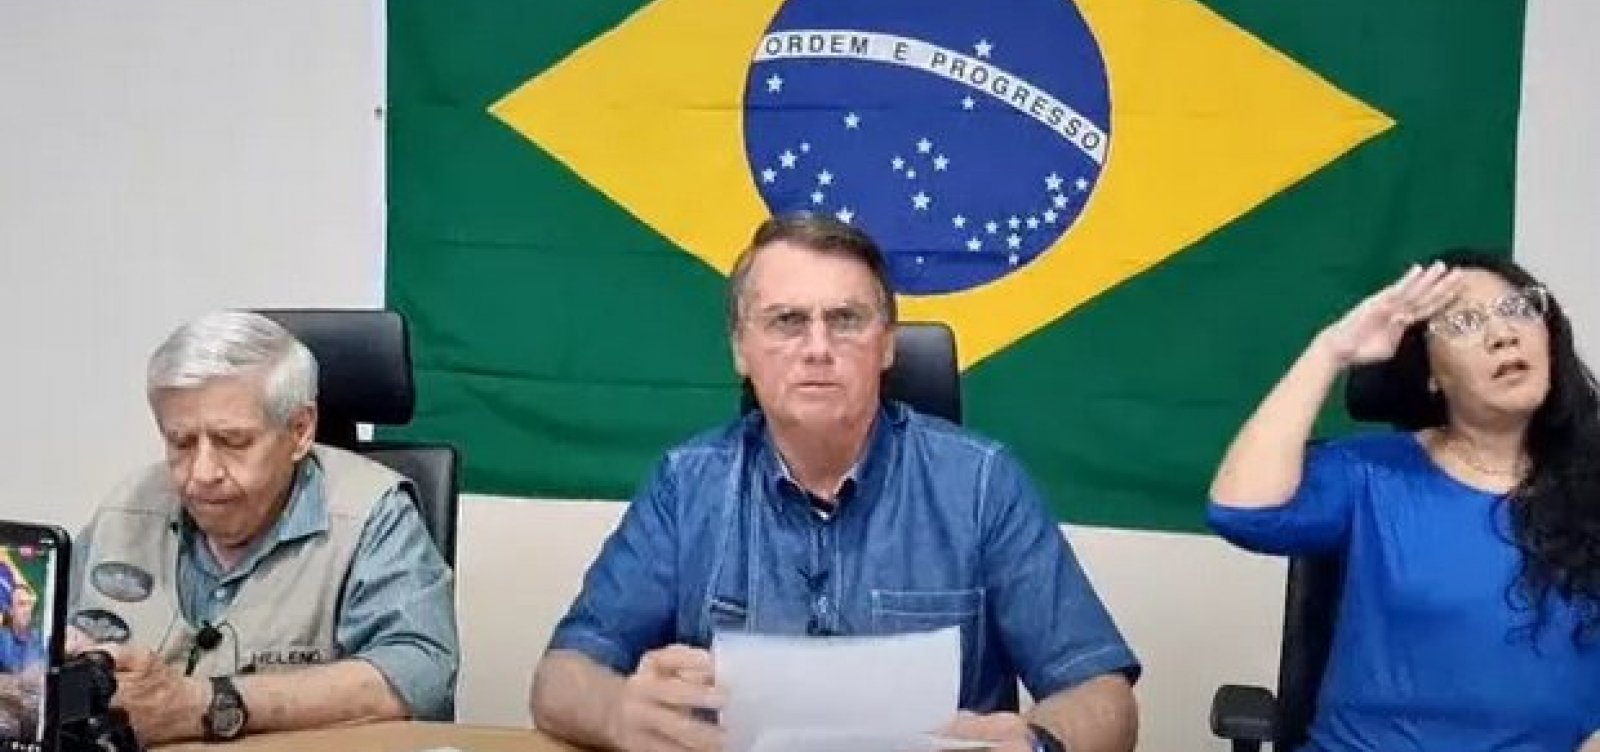 Por exigência de Bolsonaro, PL avalia pagar R$ 1,35 milhão por auditoria nas urnas 